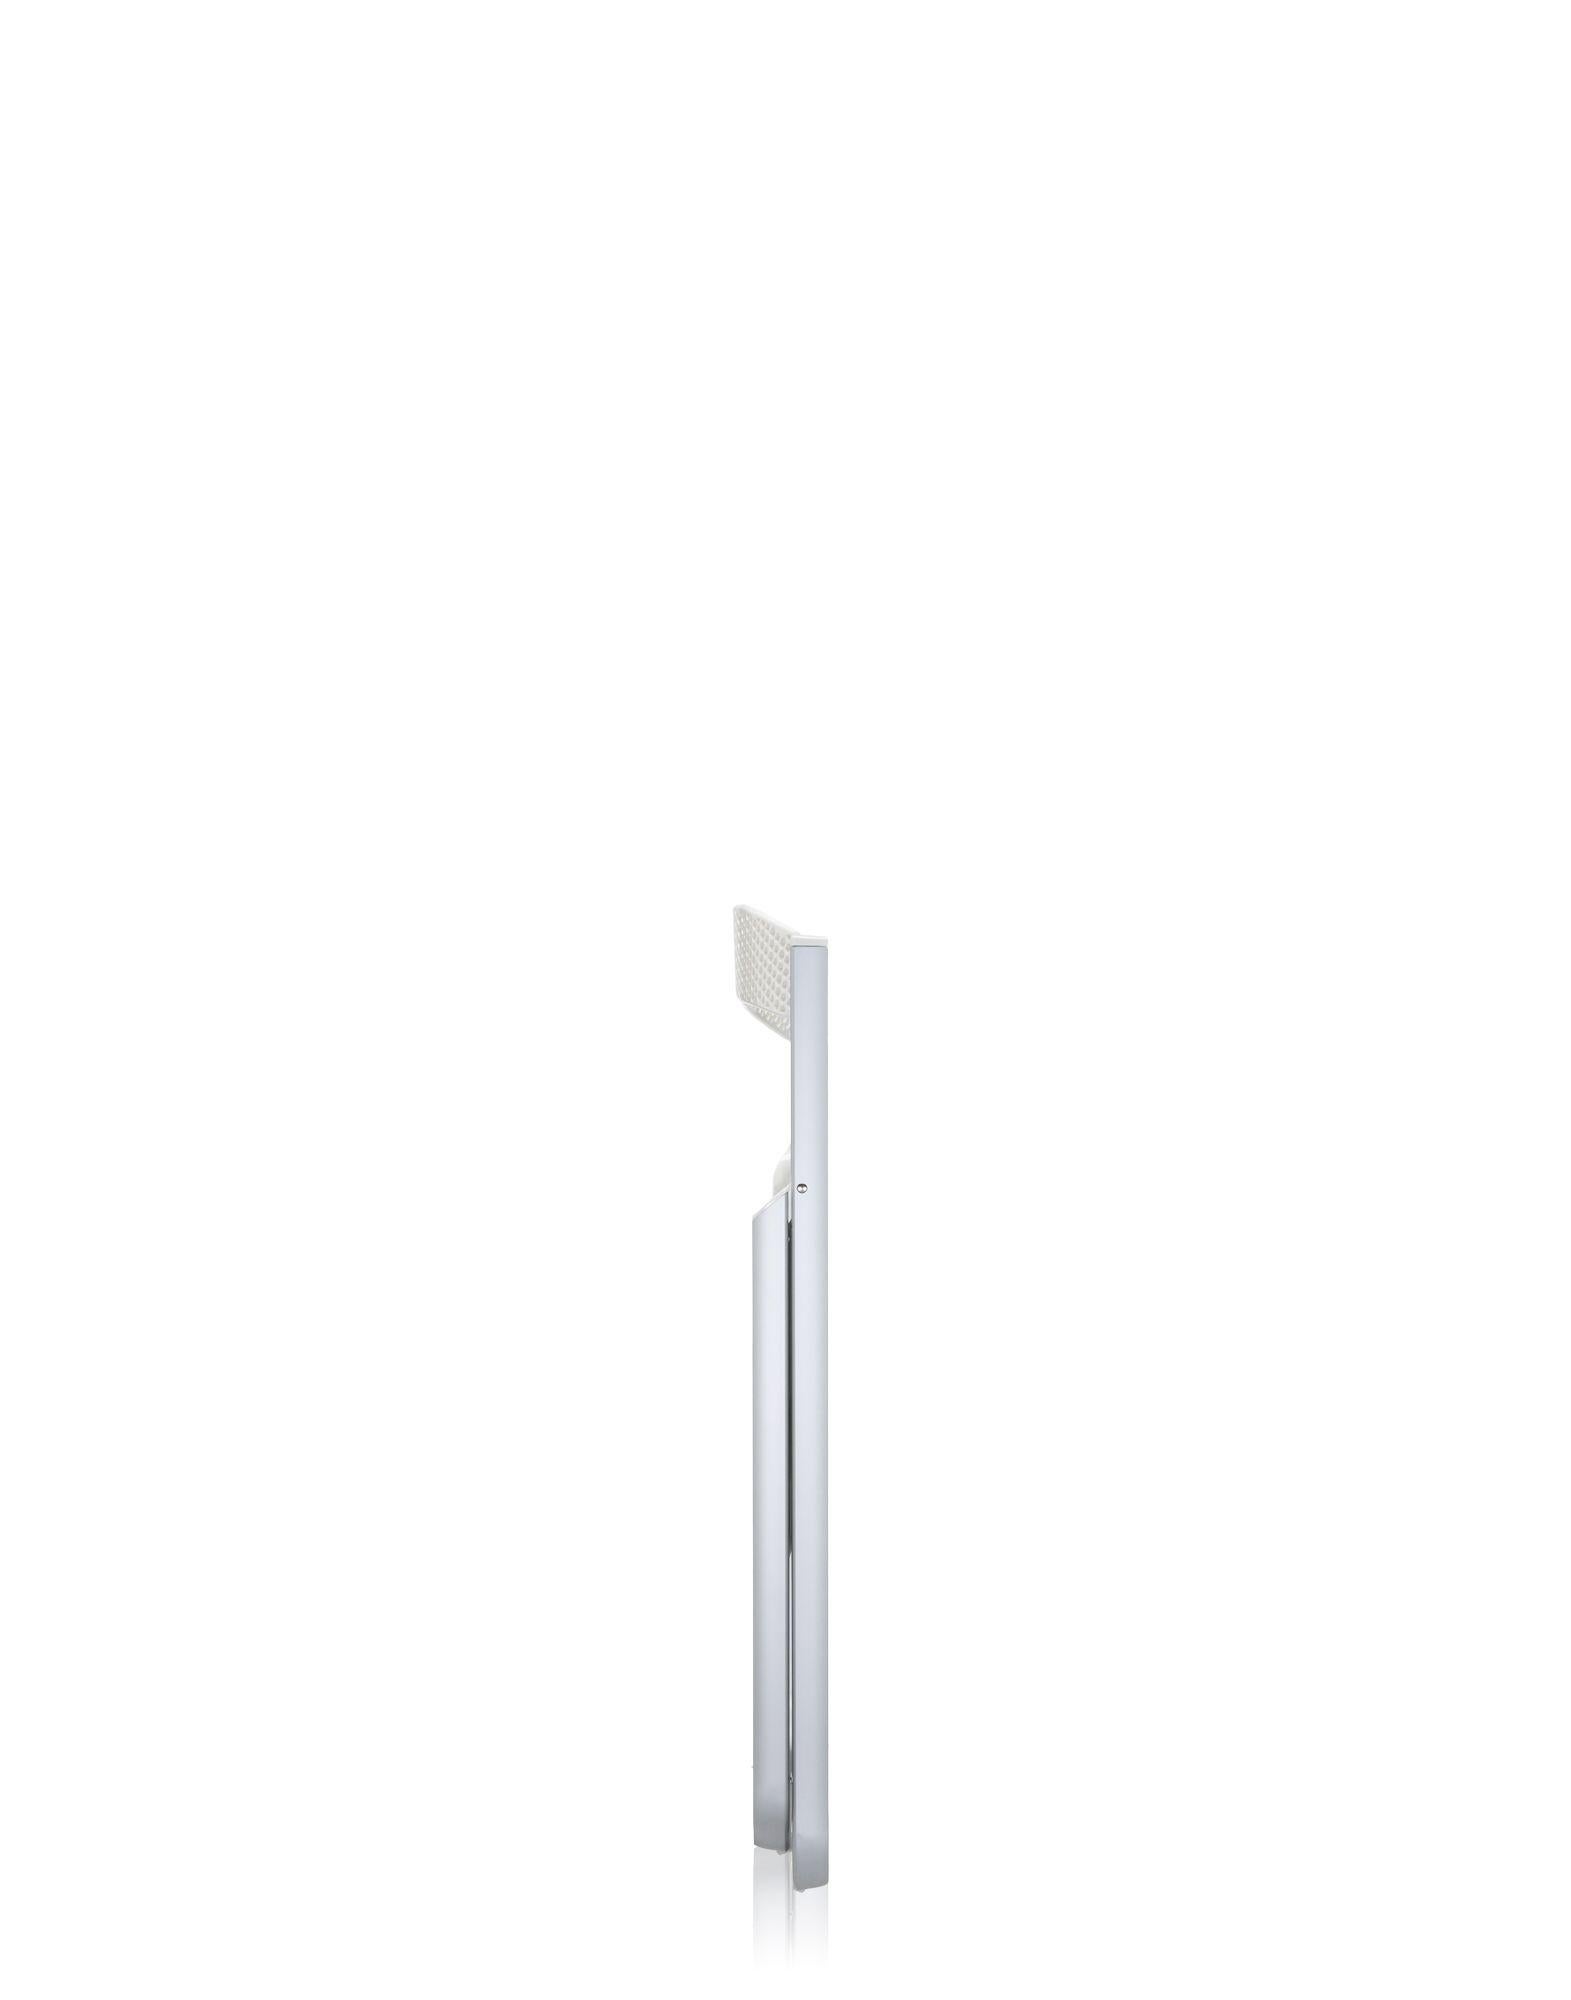 Wabenförmiger klappbarer Kartell-Stuhl in glänzendem Weiß von Alberto Media (Moderne)